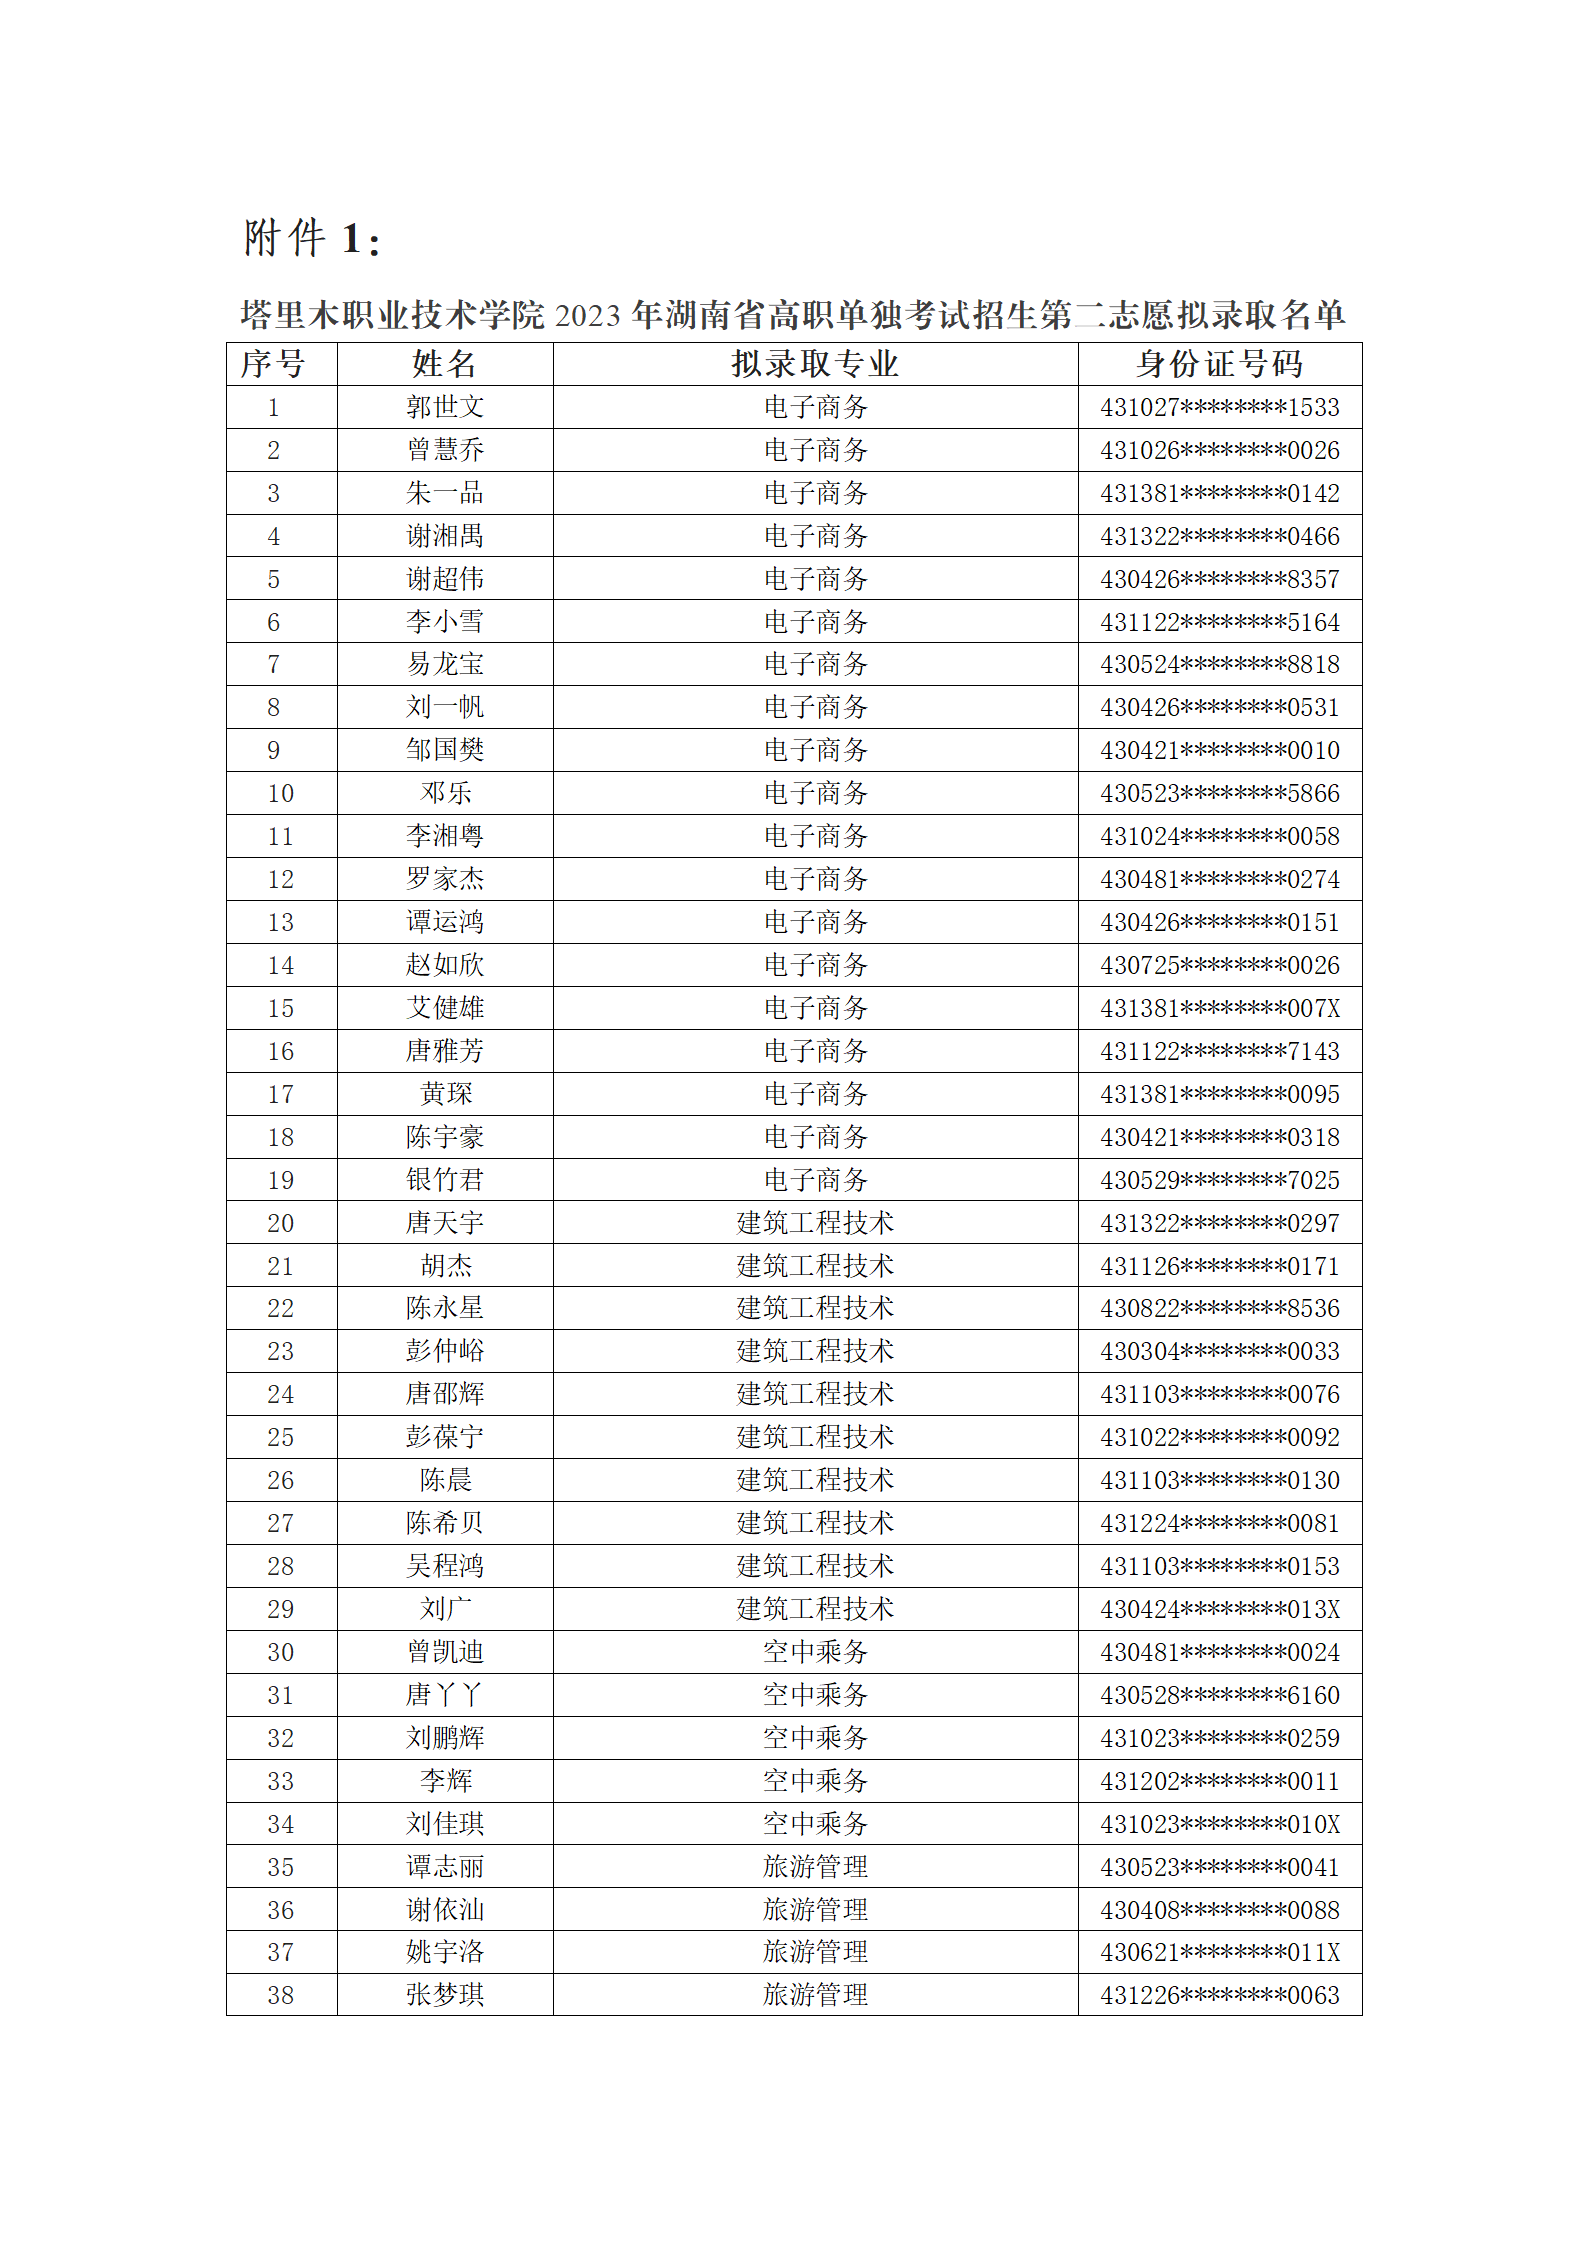 塔里木职业技术学院2023年湖南省高职单独考试招生第二志愿拟录取名单公示_03.png